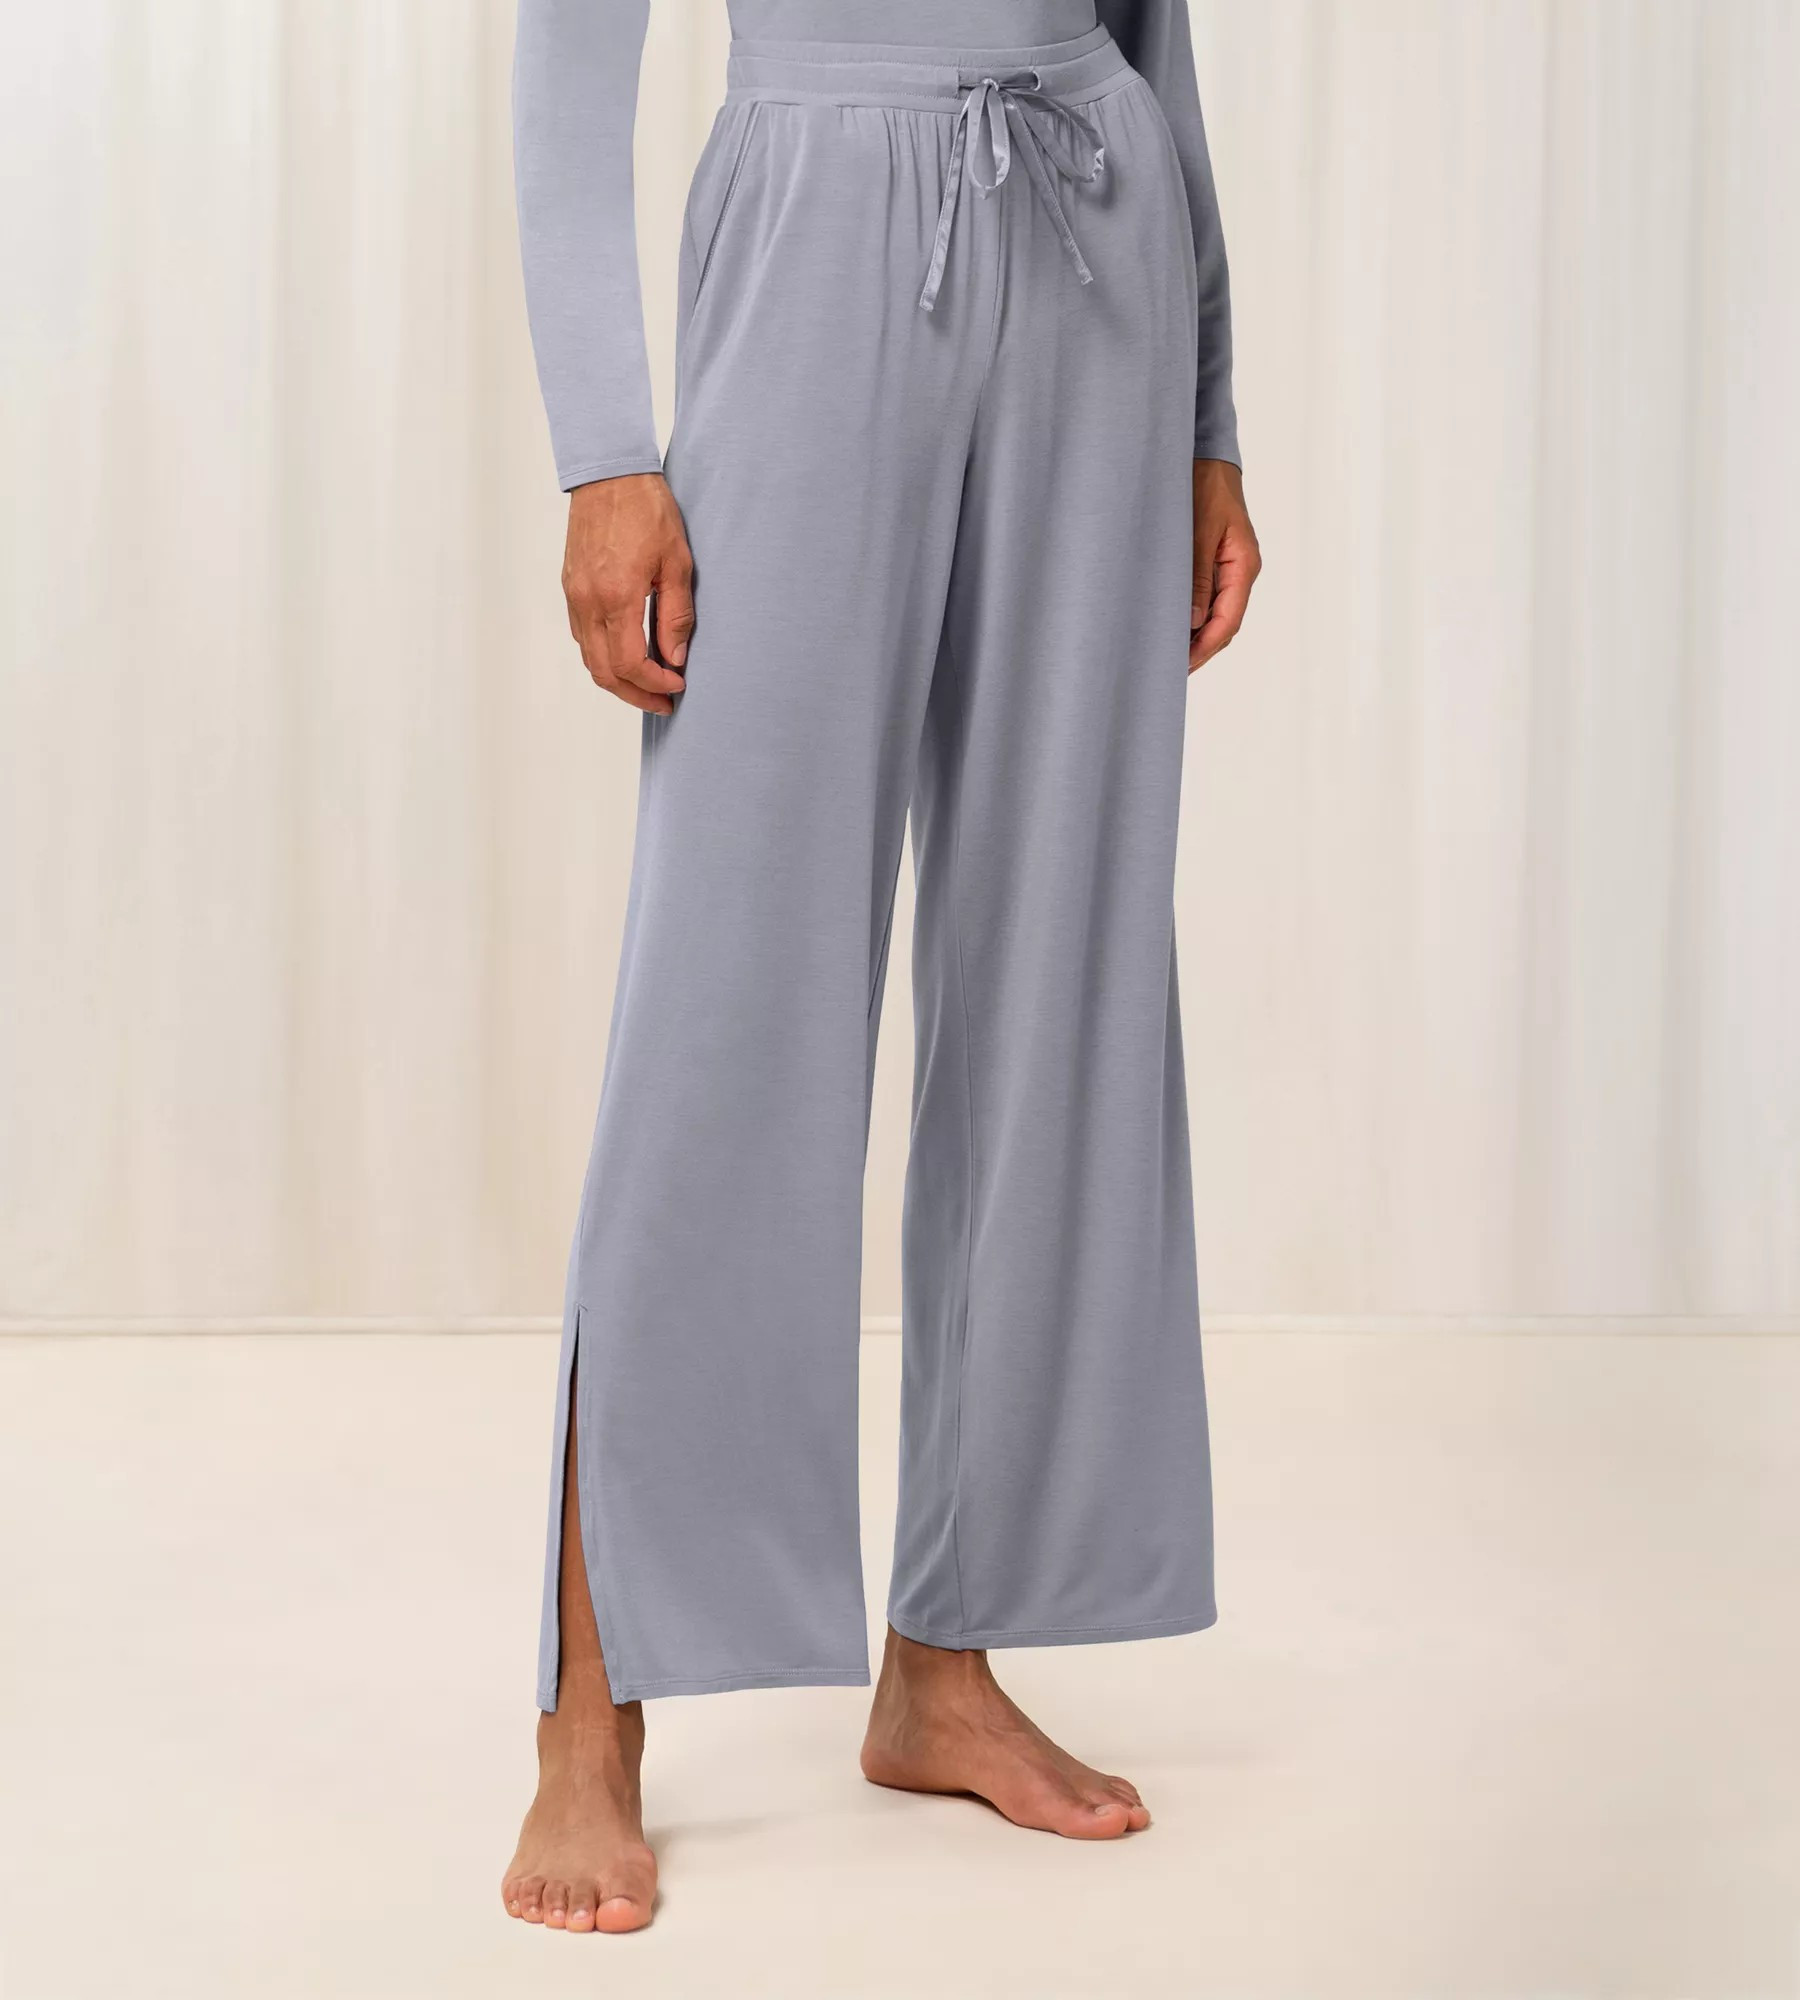 Dámské pyžamové kalhoty Aloe 7686 0042 model 17601973 - Triumph